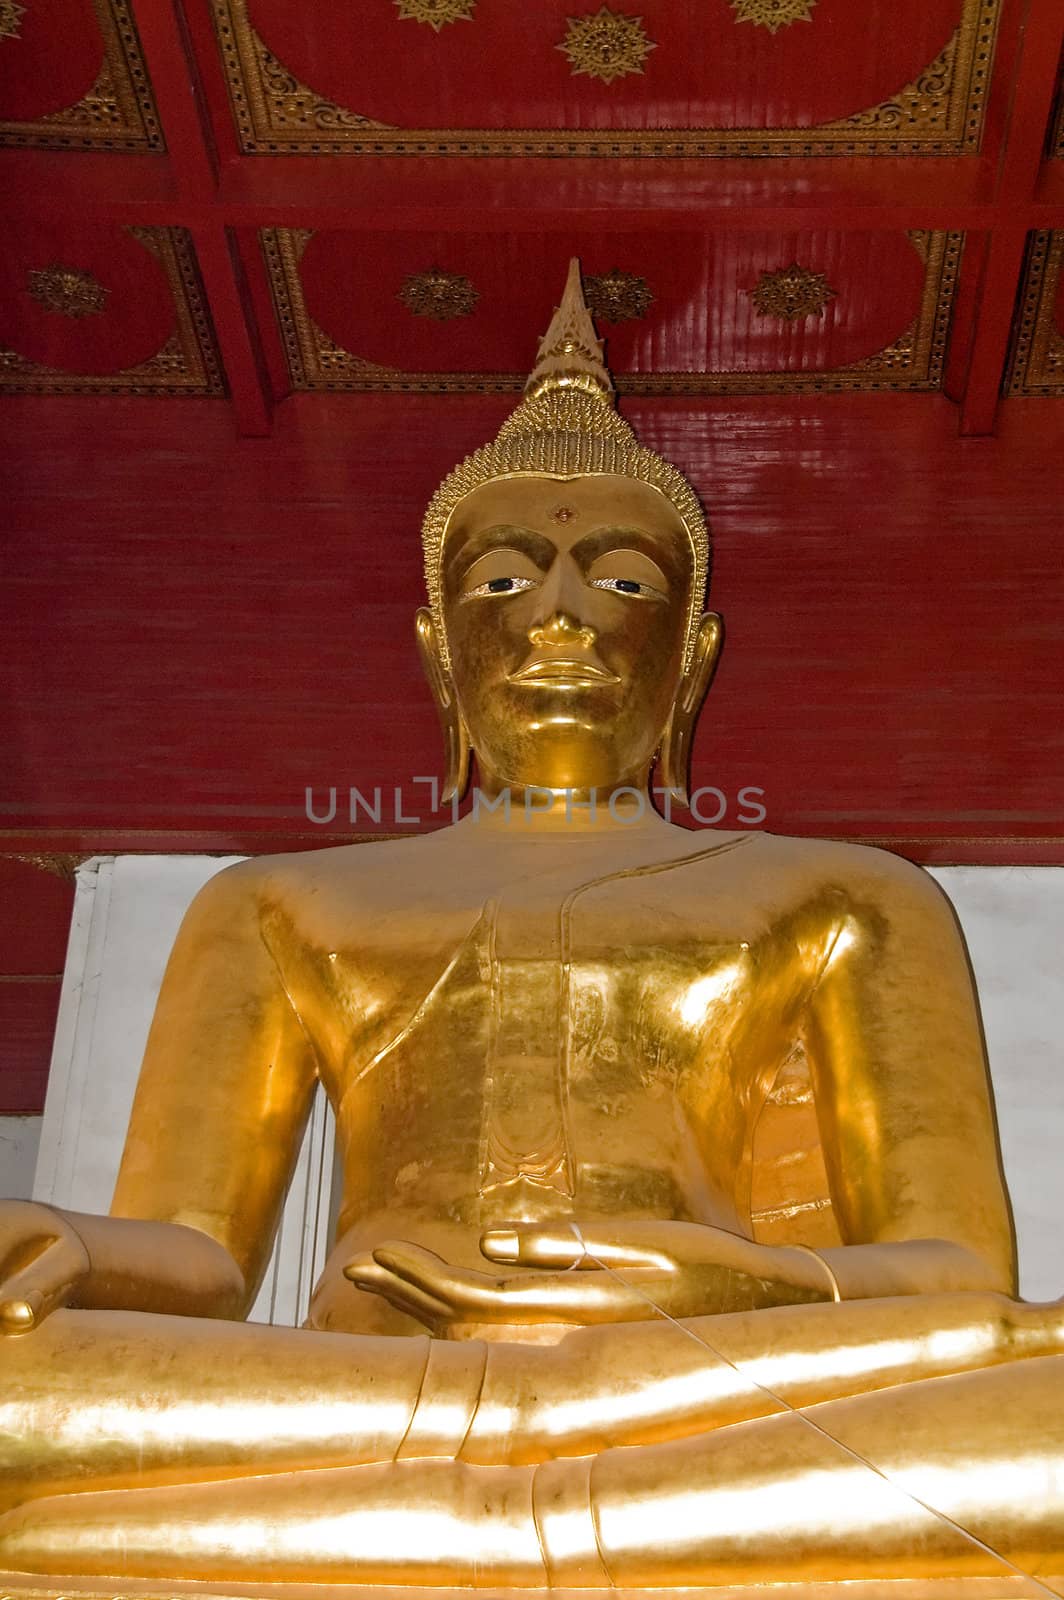 golden buddha